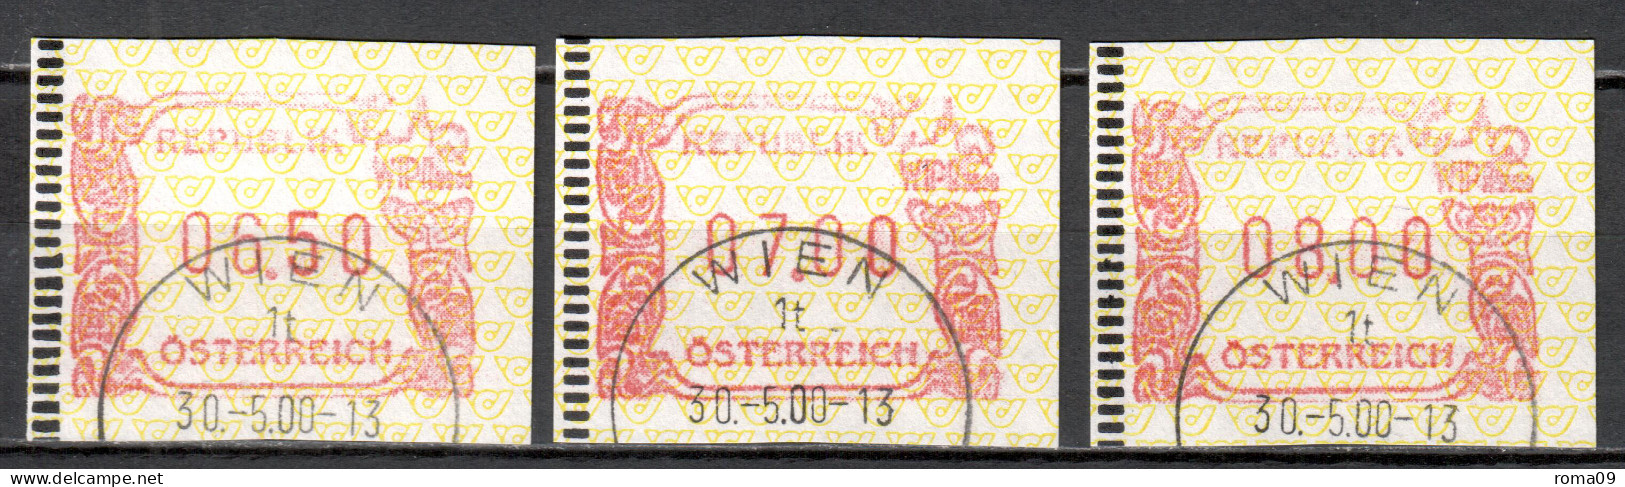 MiNr. ATM 4 (3x), Internationale Briefmarkenausstellung WIPA 2000, Wien; Gestempelt: B - Automatenmarken [ATM]